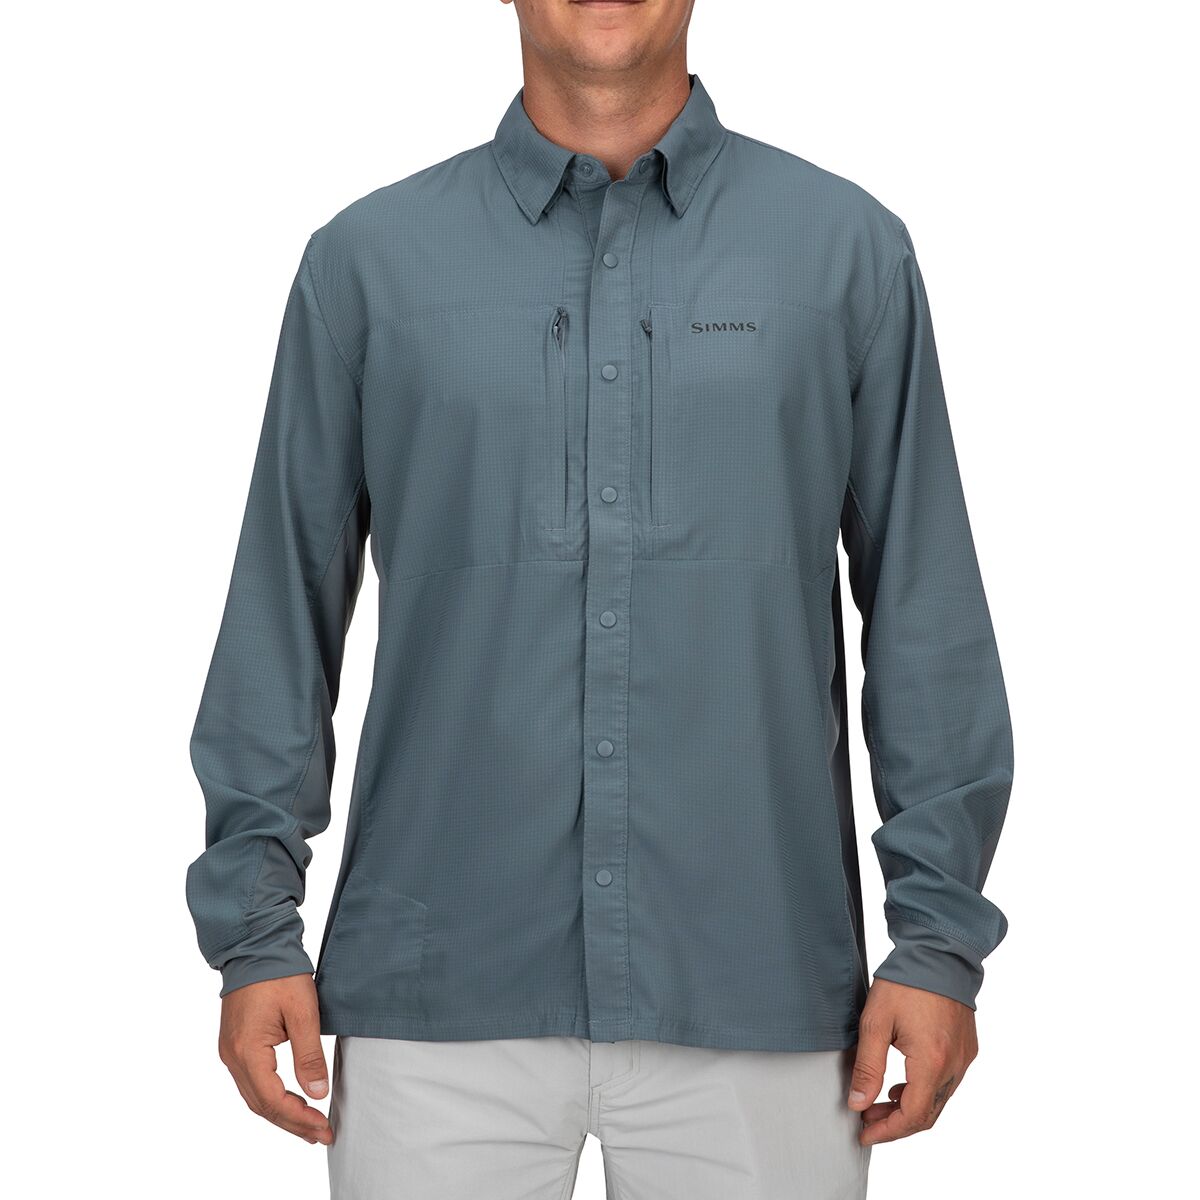 ExOfficio Vizcaino Long-Sleeve Shirt - Men's - Men